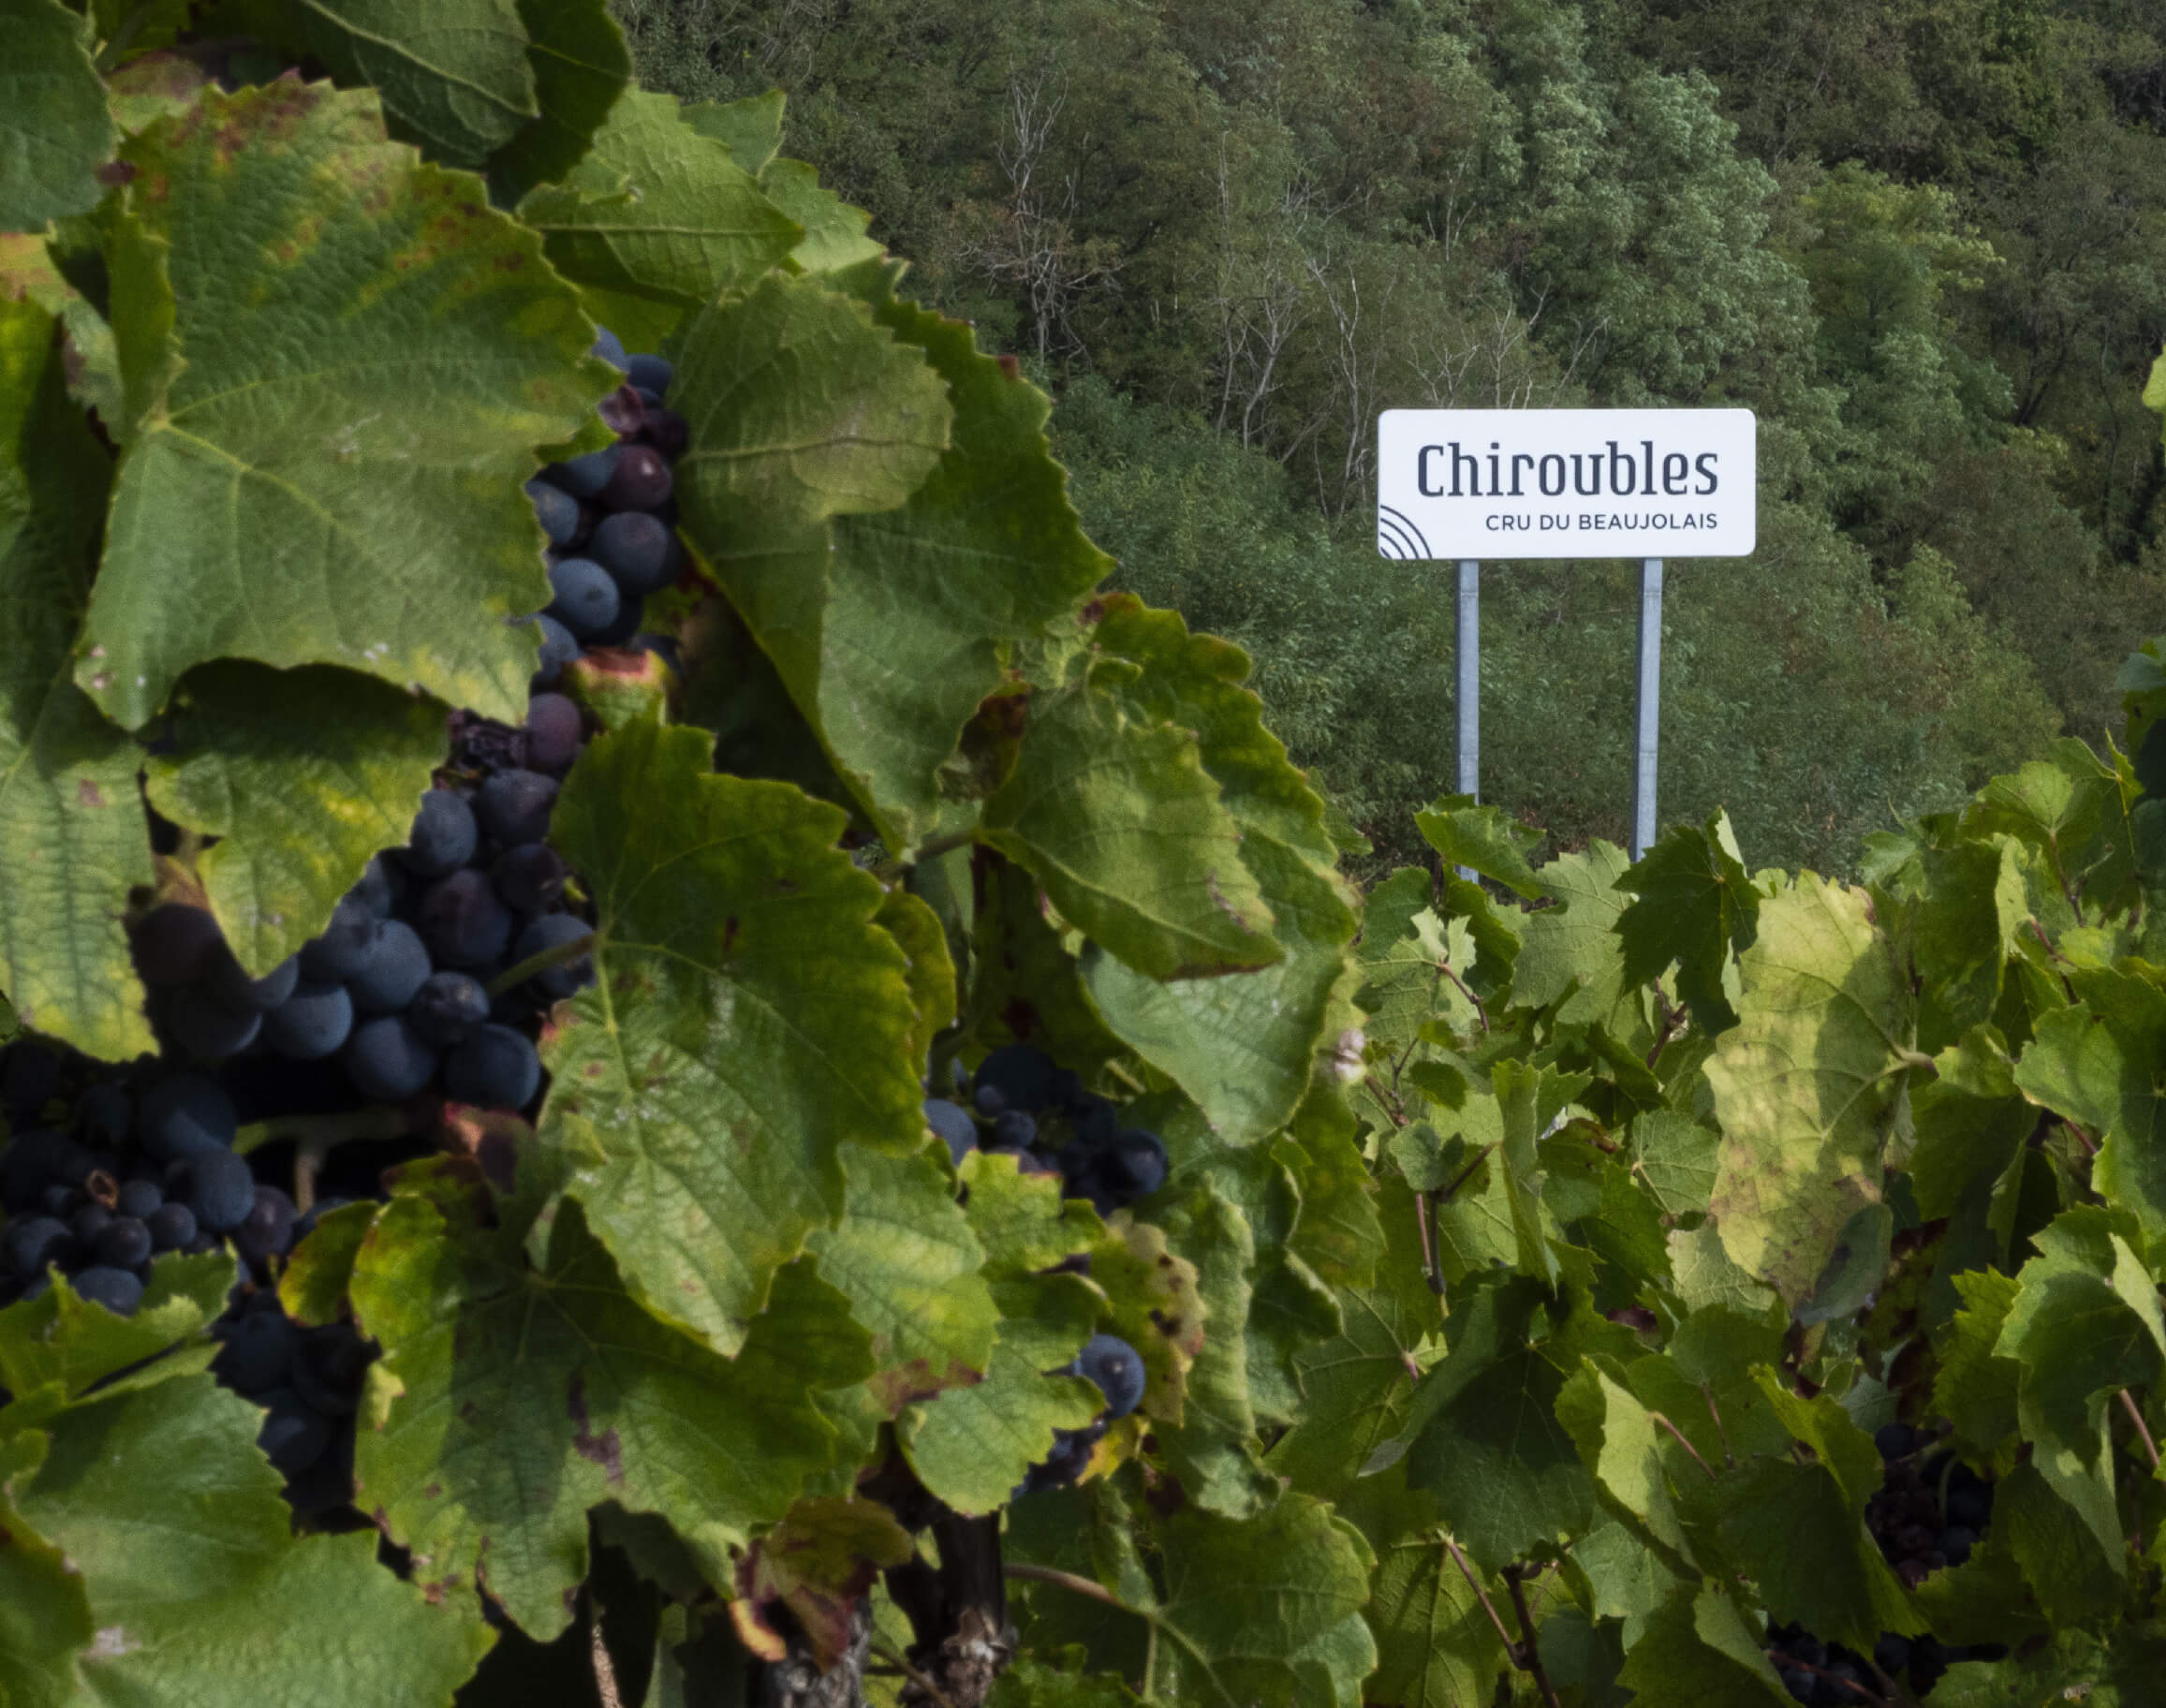 signaletique chiroubles dans les vignes - Beaujolais